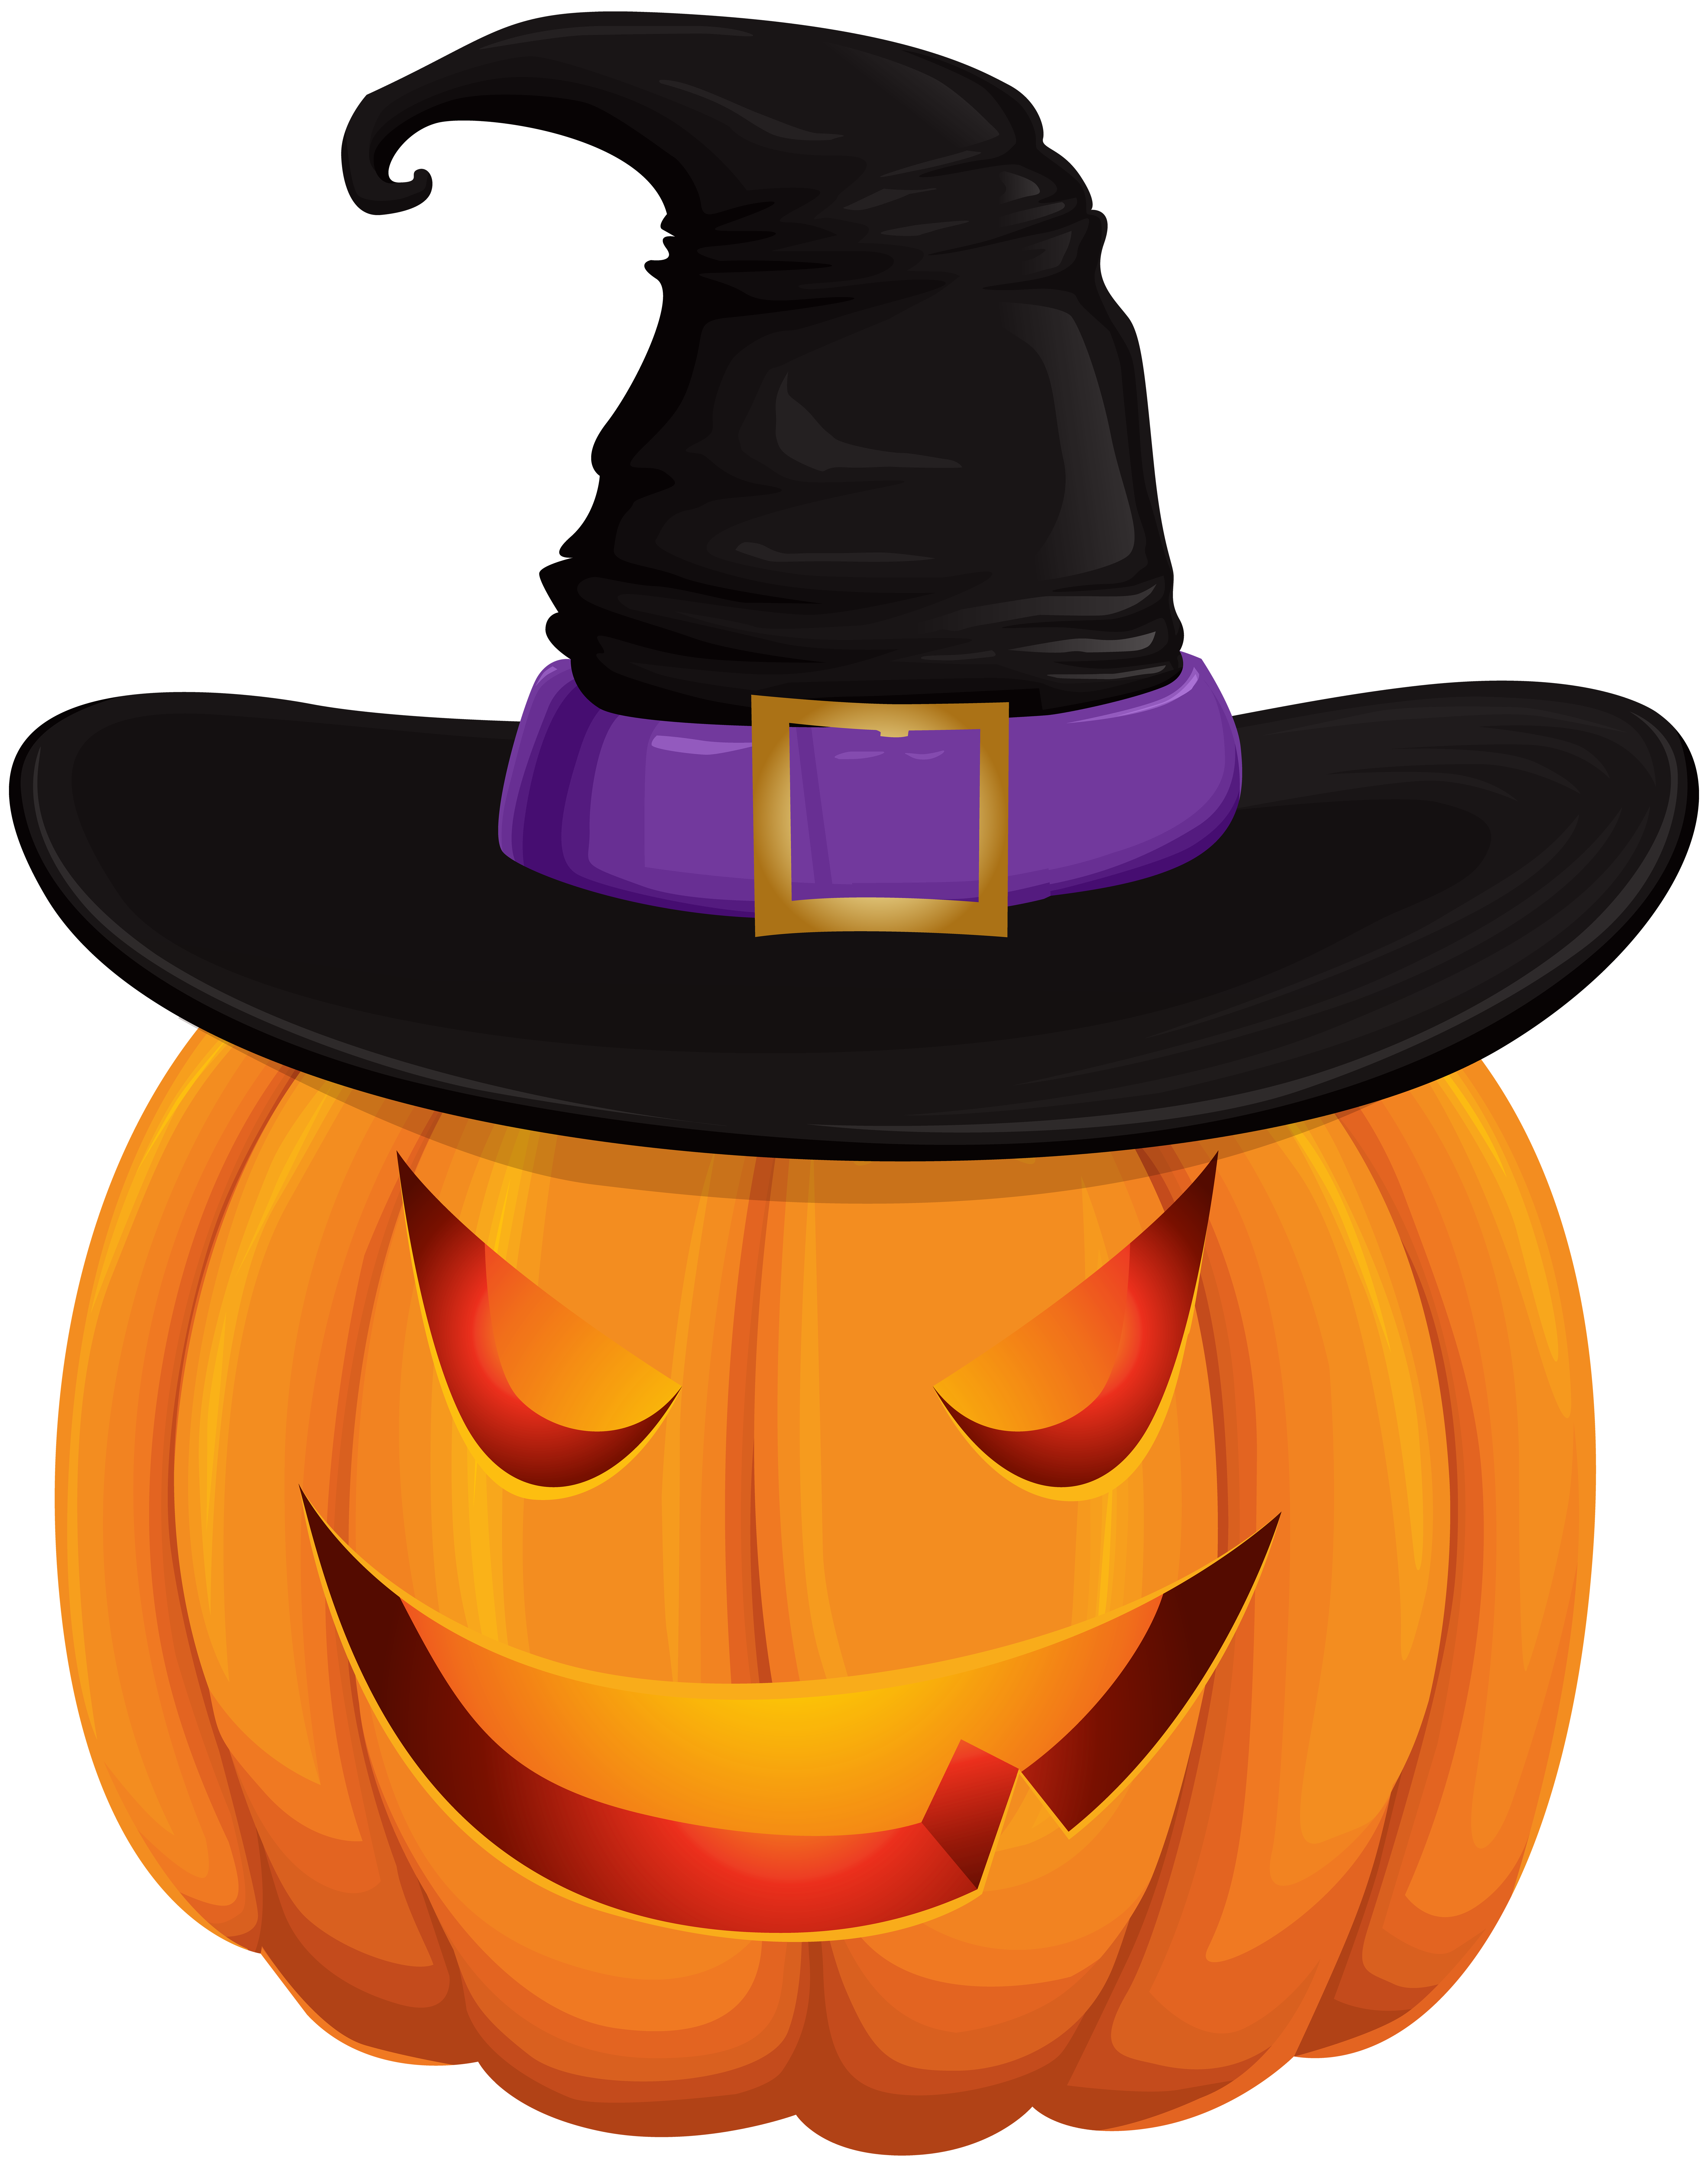 Witch clipart orange. Halloween pumpkin with hat